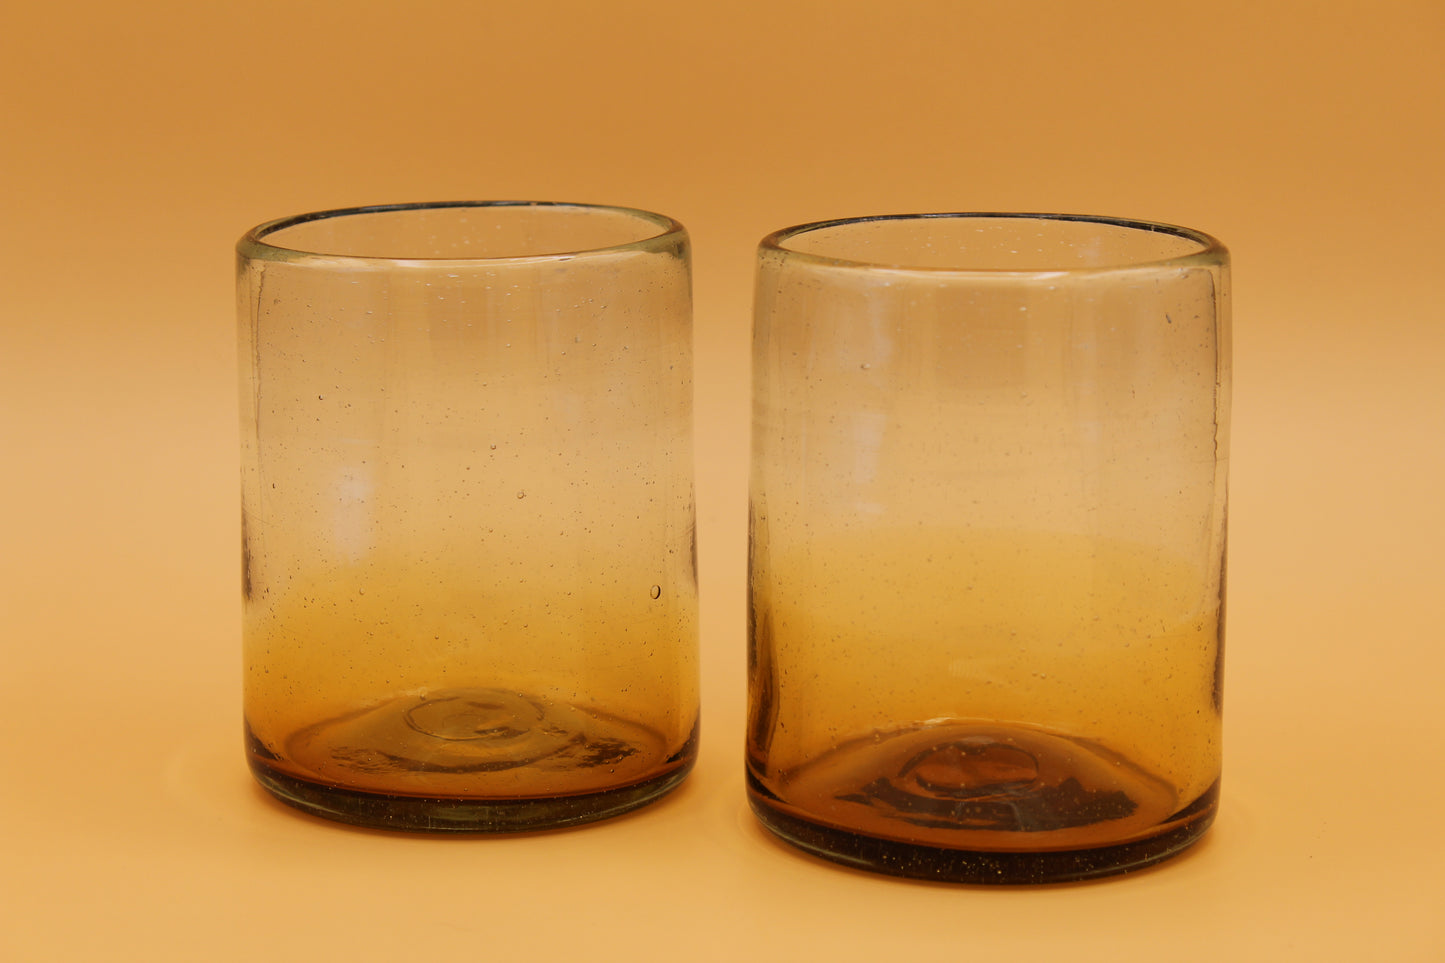 Sofia Short Ombre Glass (Set of 2)